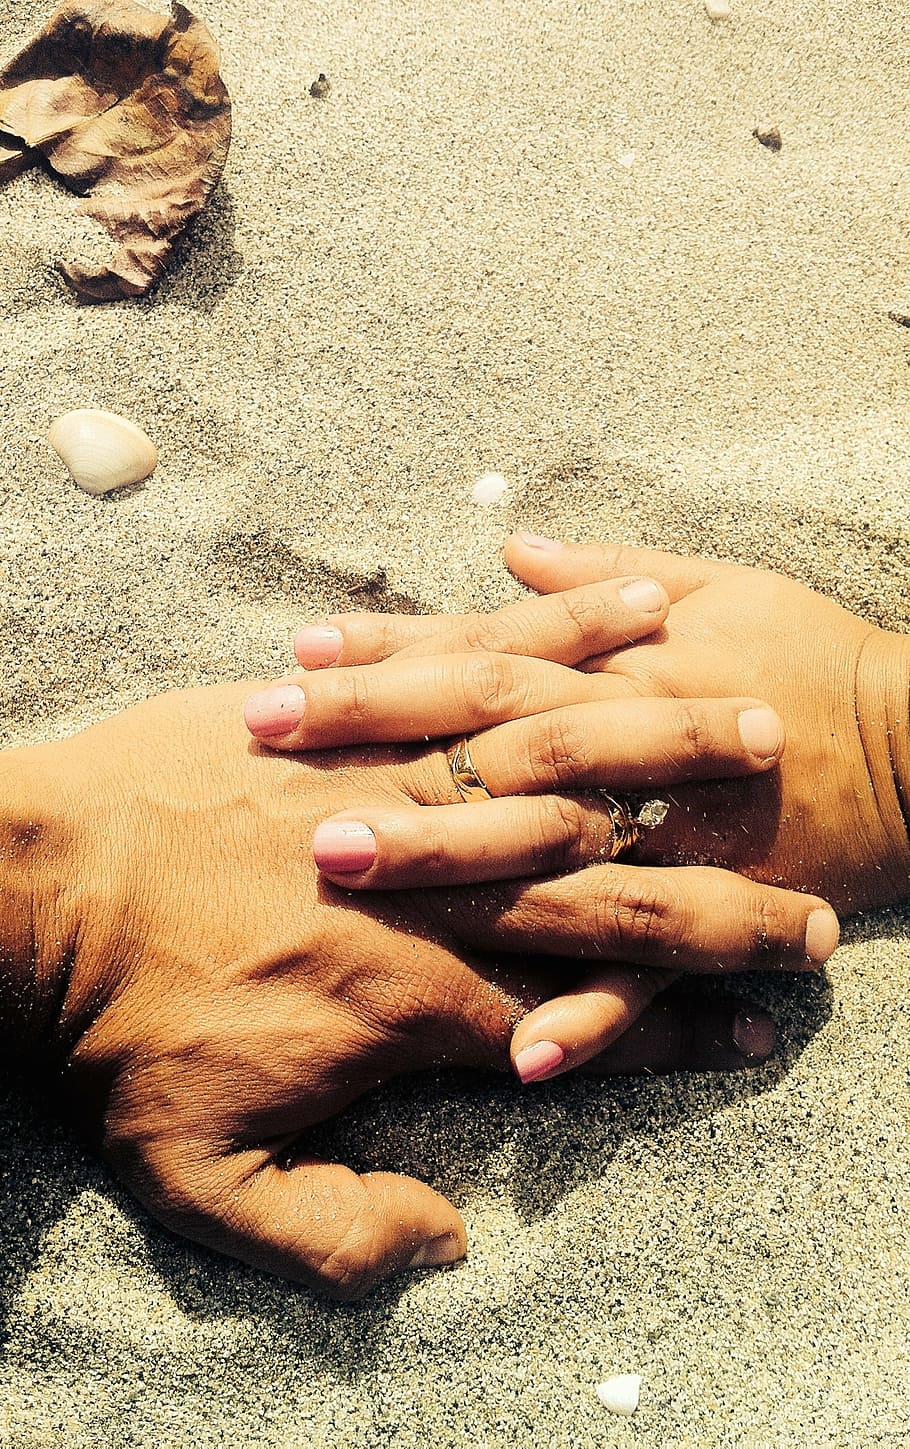 fotografia em close-up, duas pessoas palma, cinza, areia, humano, segurando, mãos, segurando as mãos, noivado, alianças